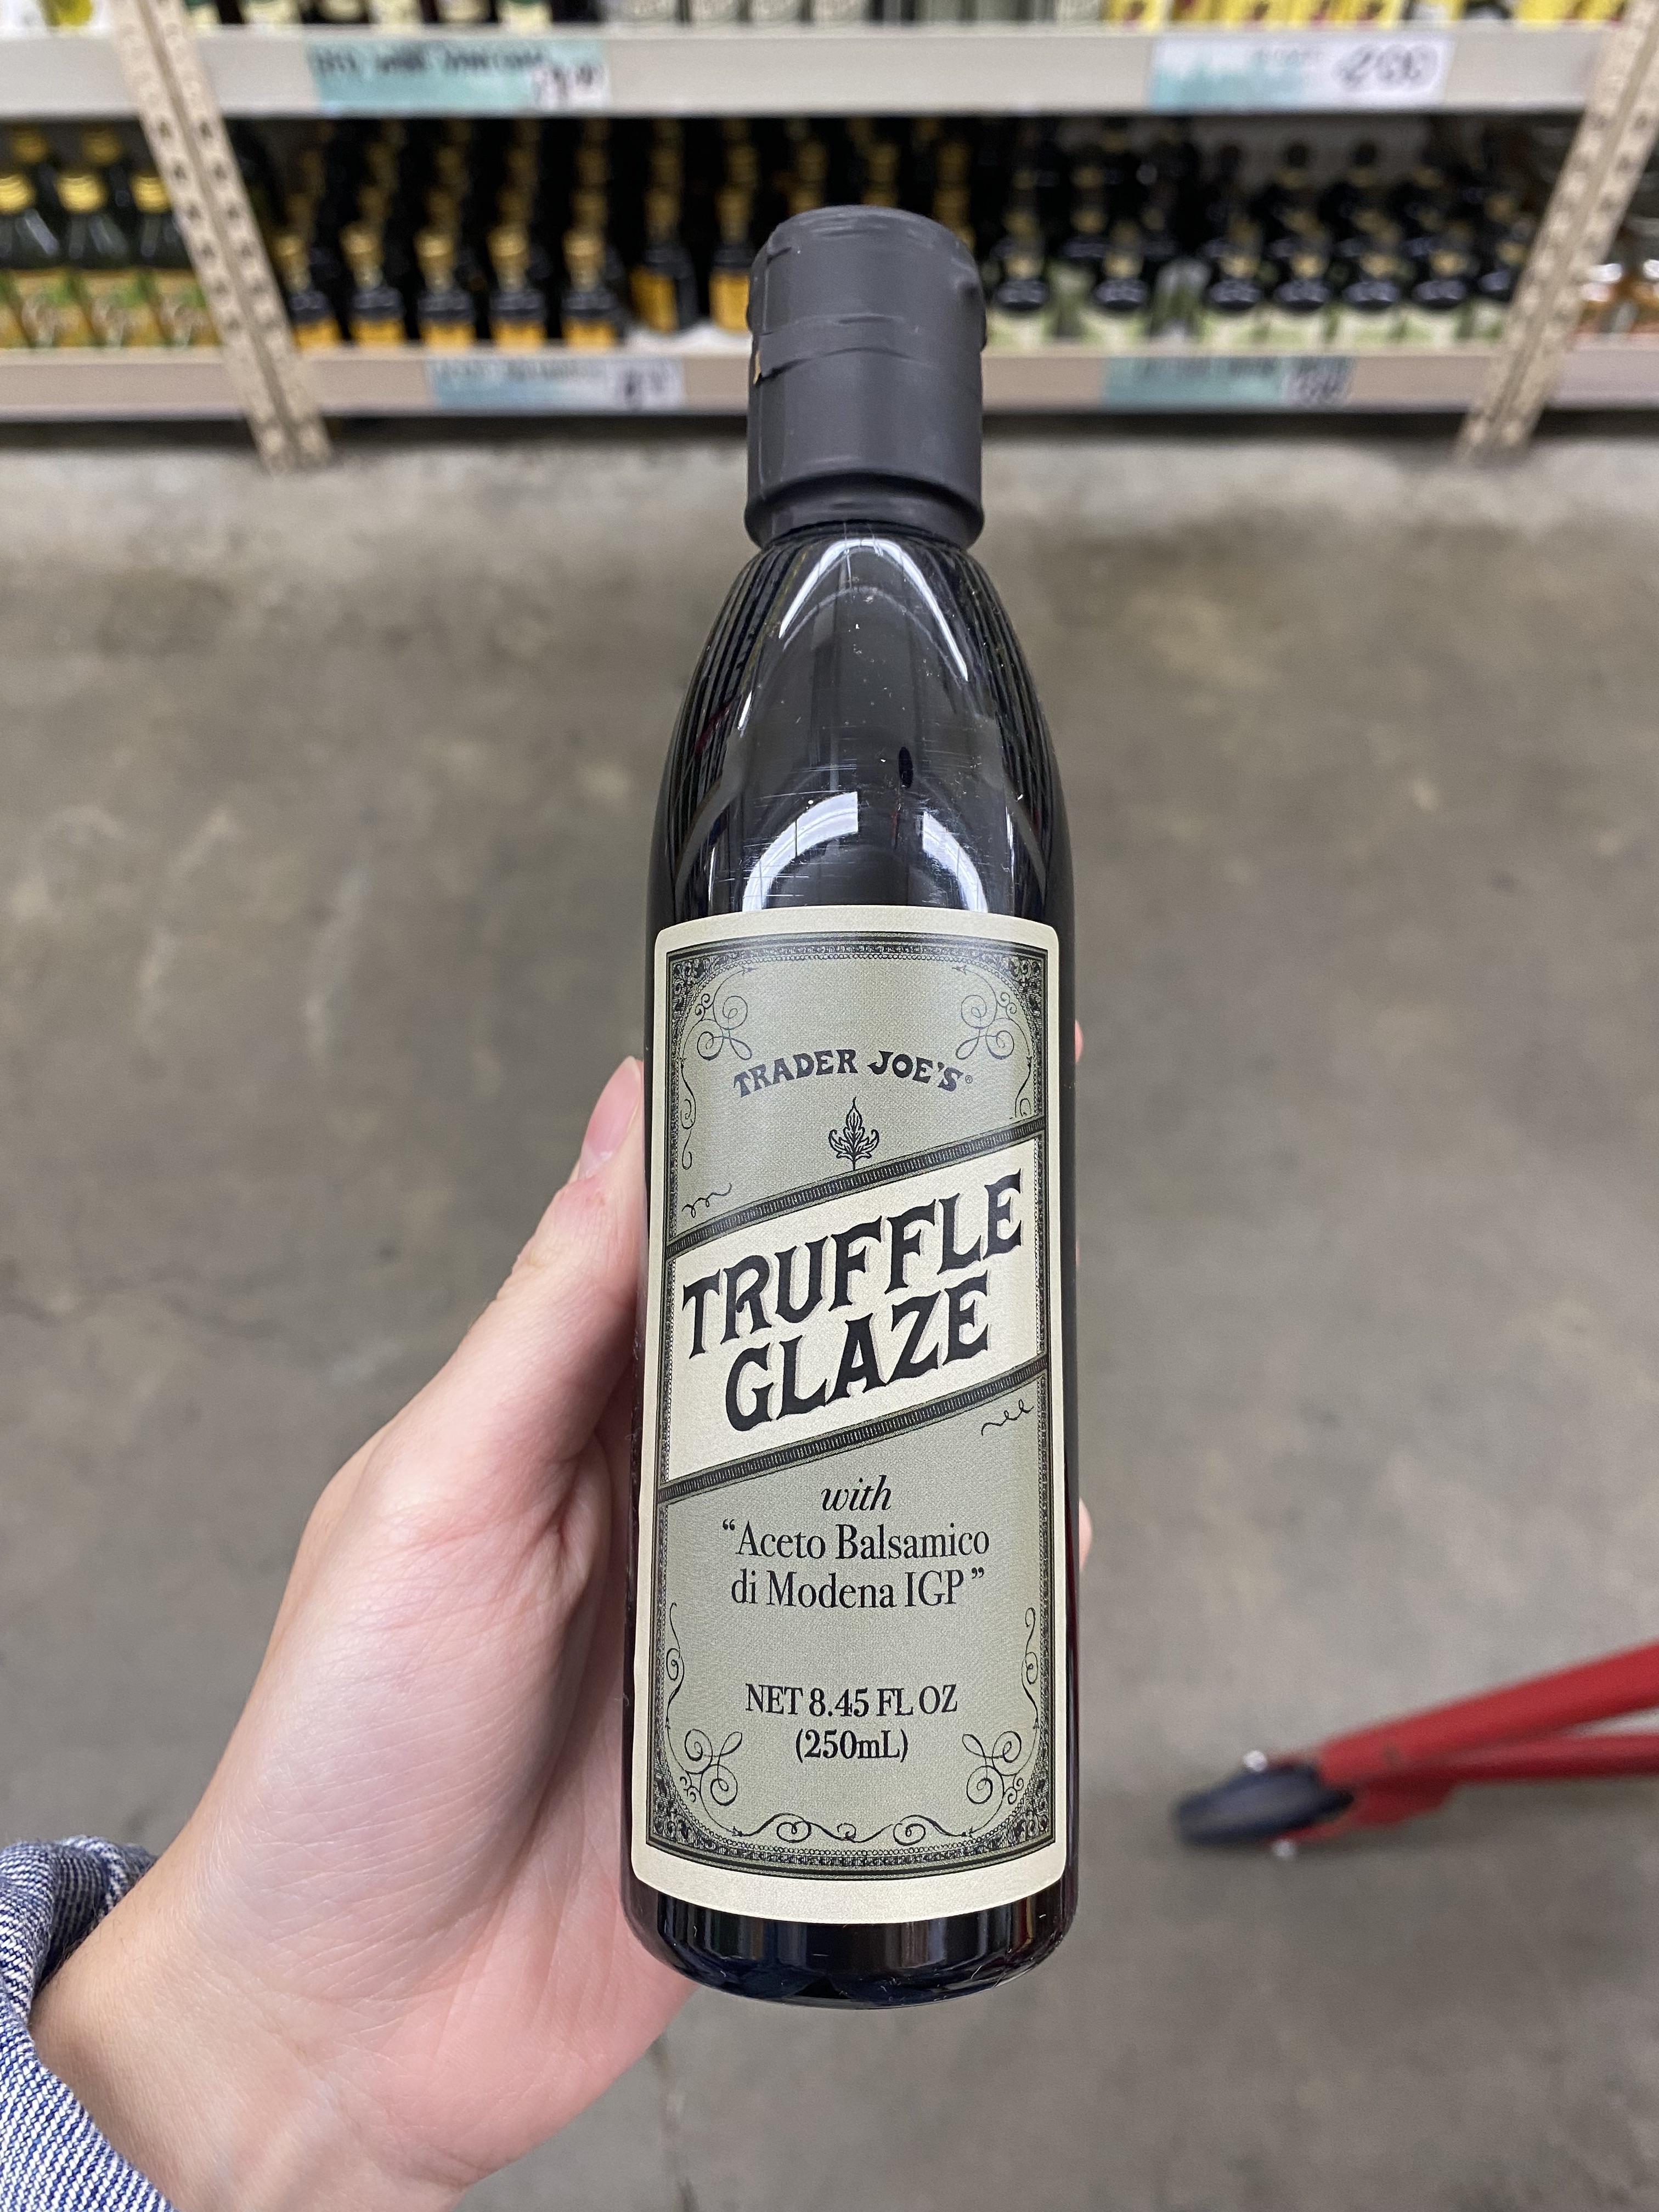 a bottle of truffle glaze